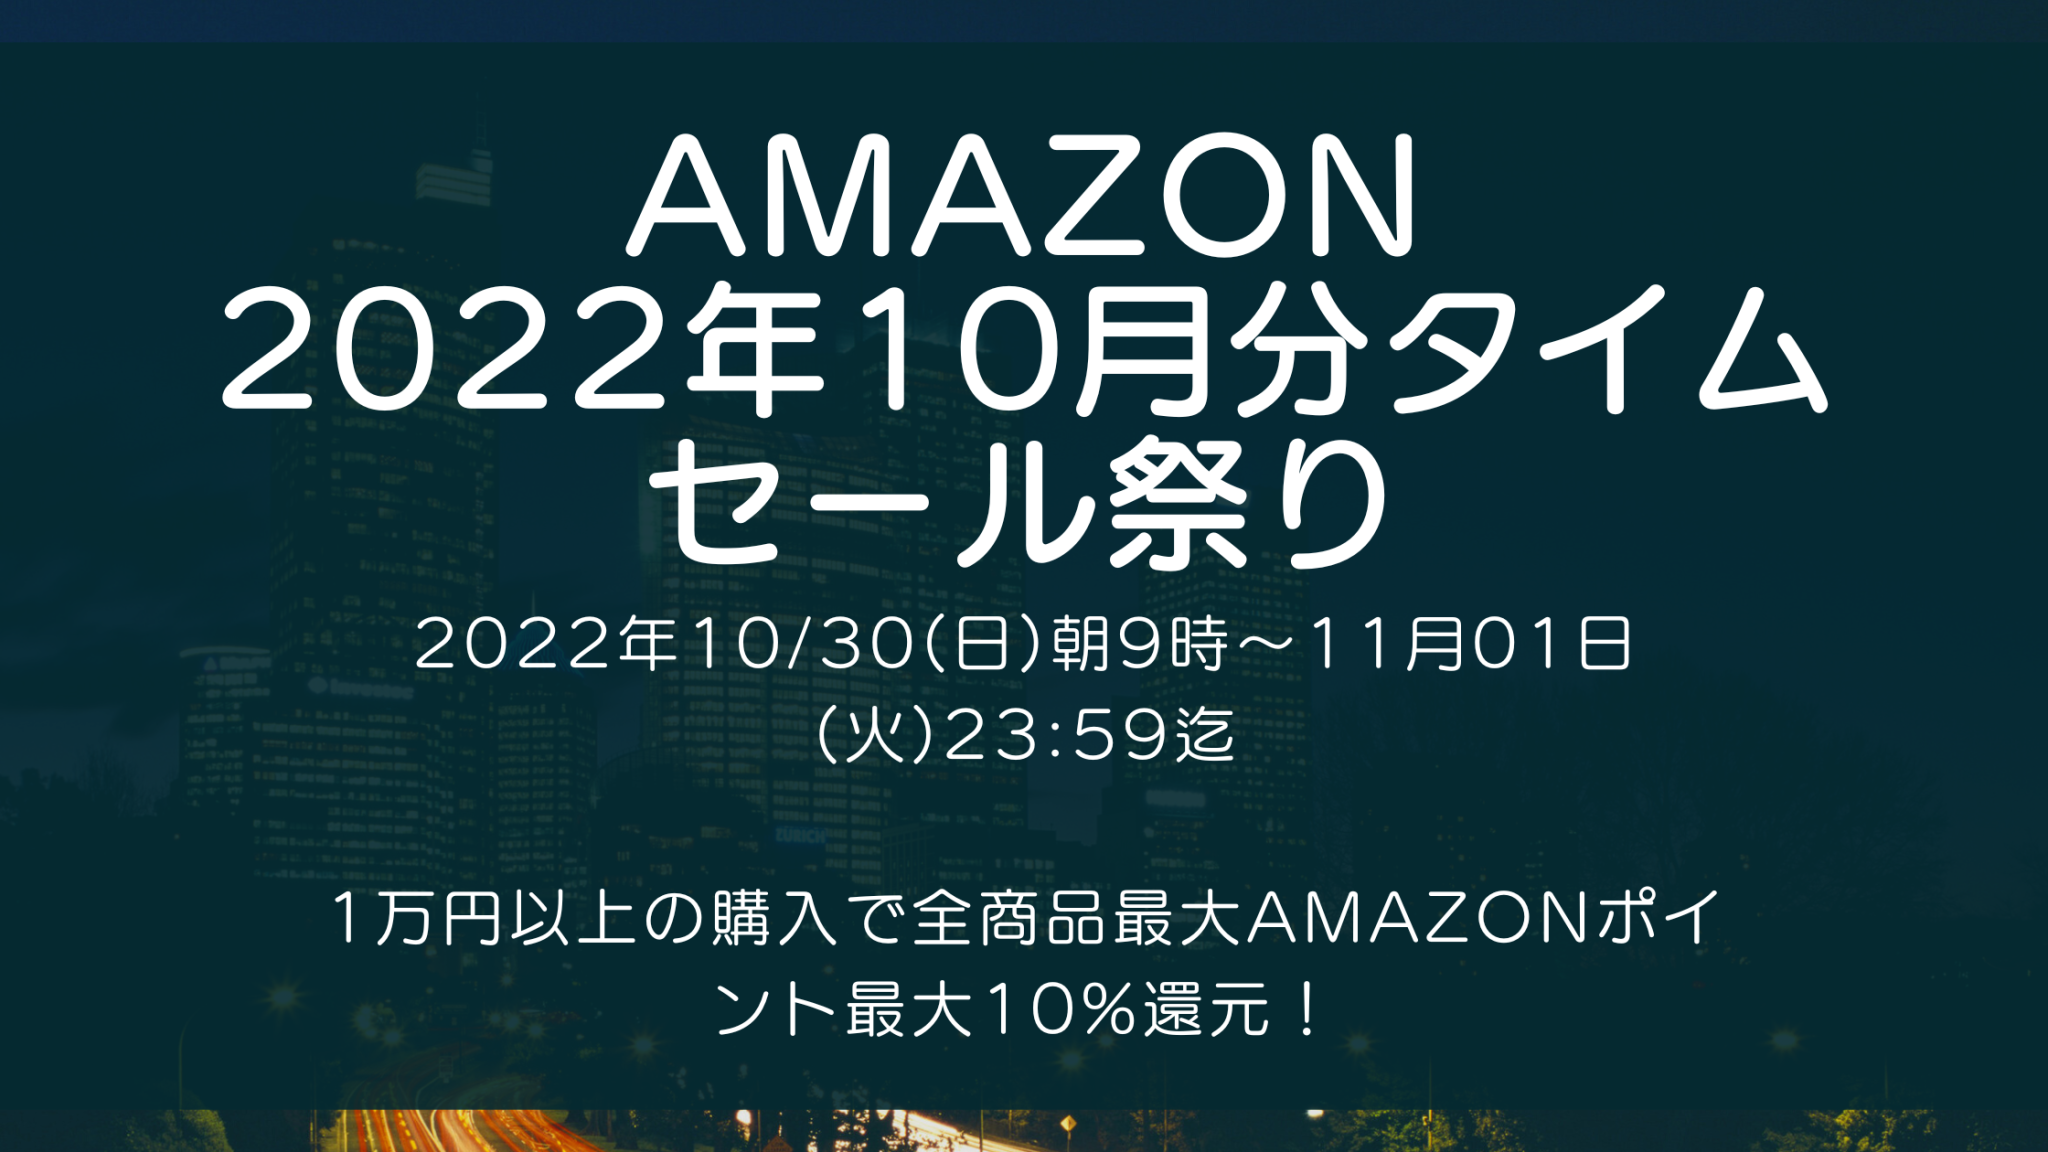 Amazonにて2022年10月実施分の「タイムセール祭り」を10月30日(日)朝9時から約3日間開催 #Amazon #アマゾン #セール #特価 #タイムセール #タイムセール祭り